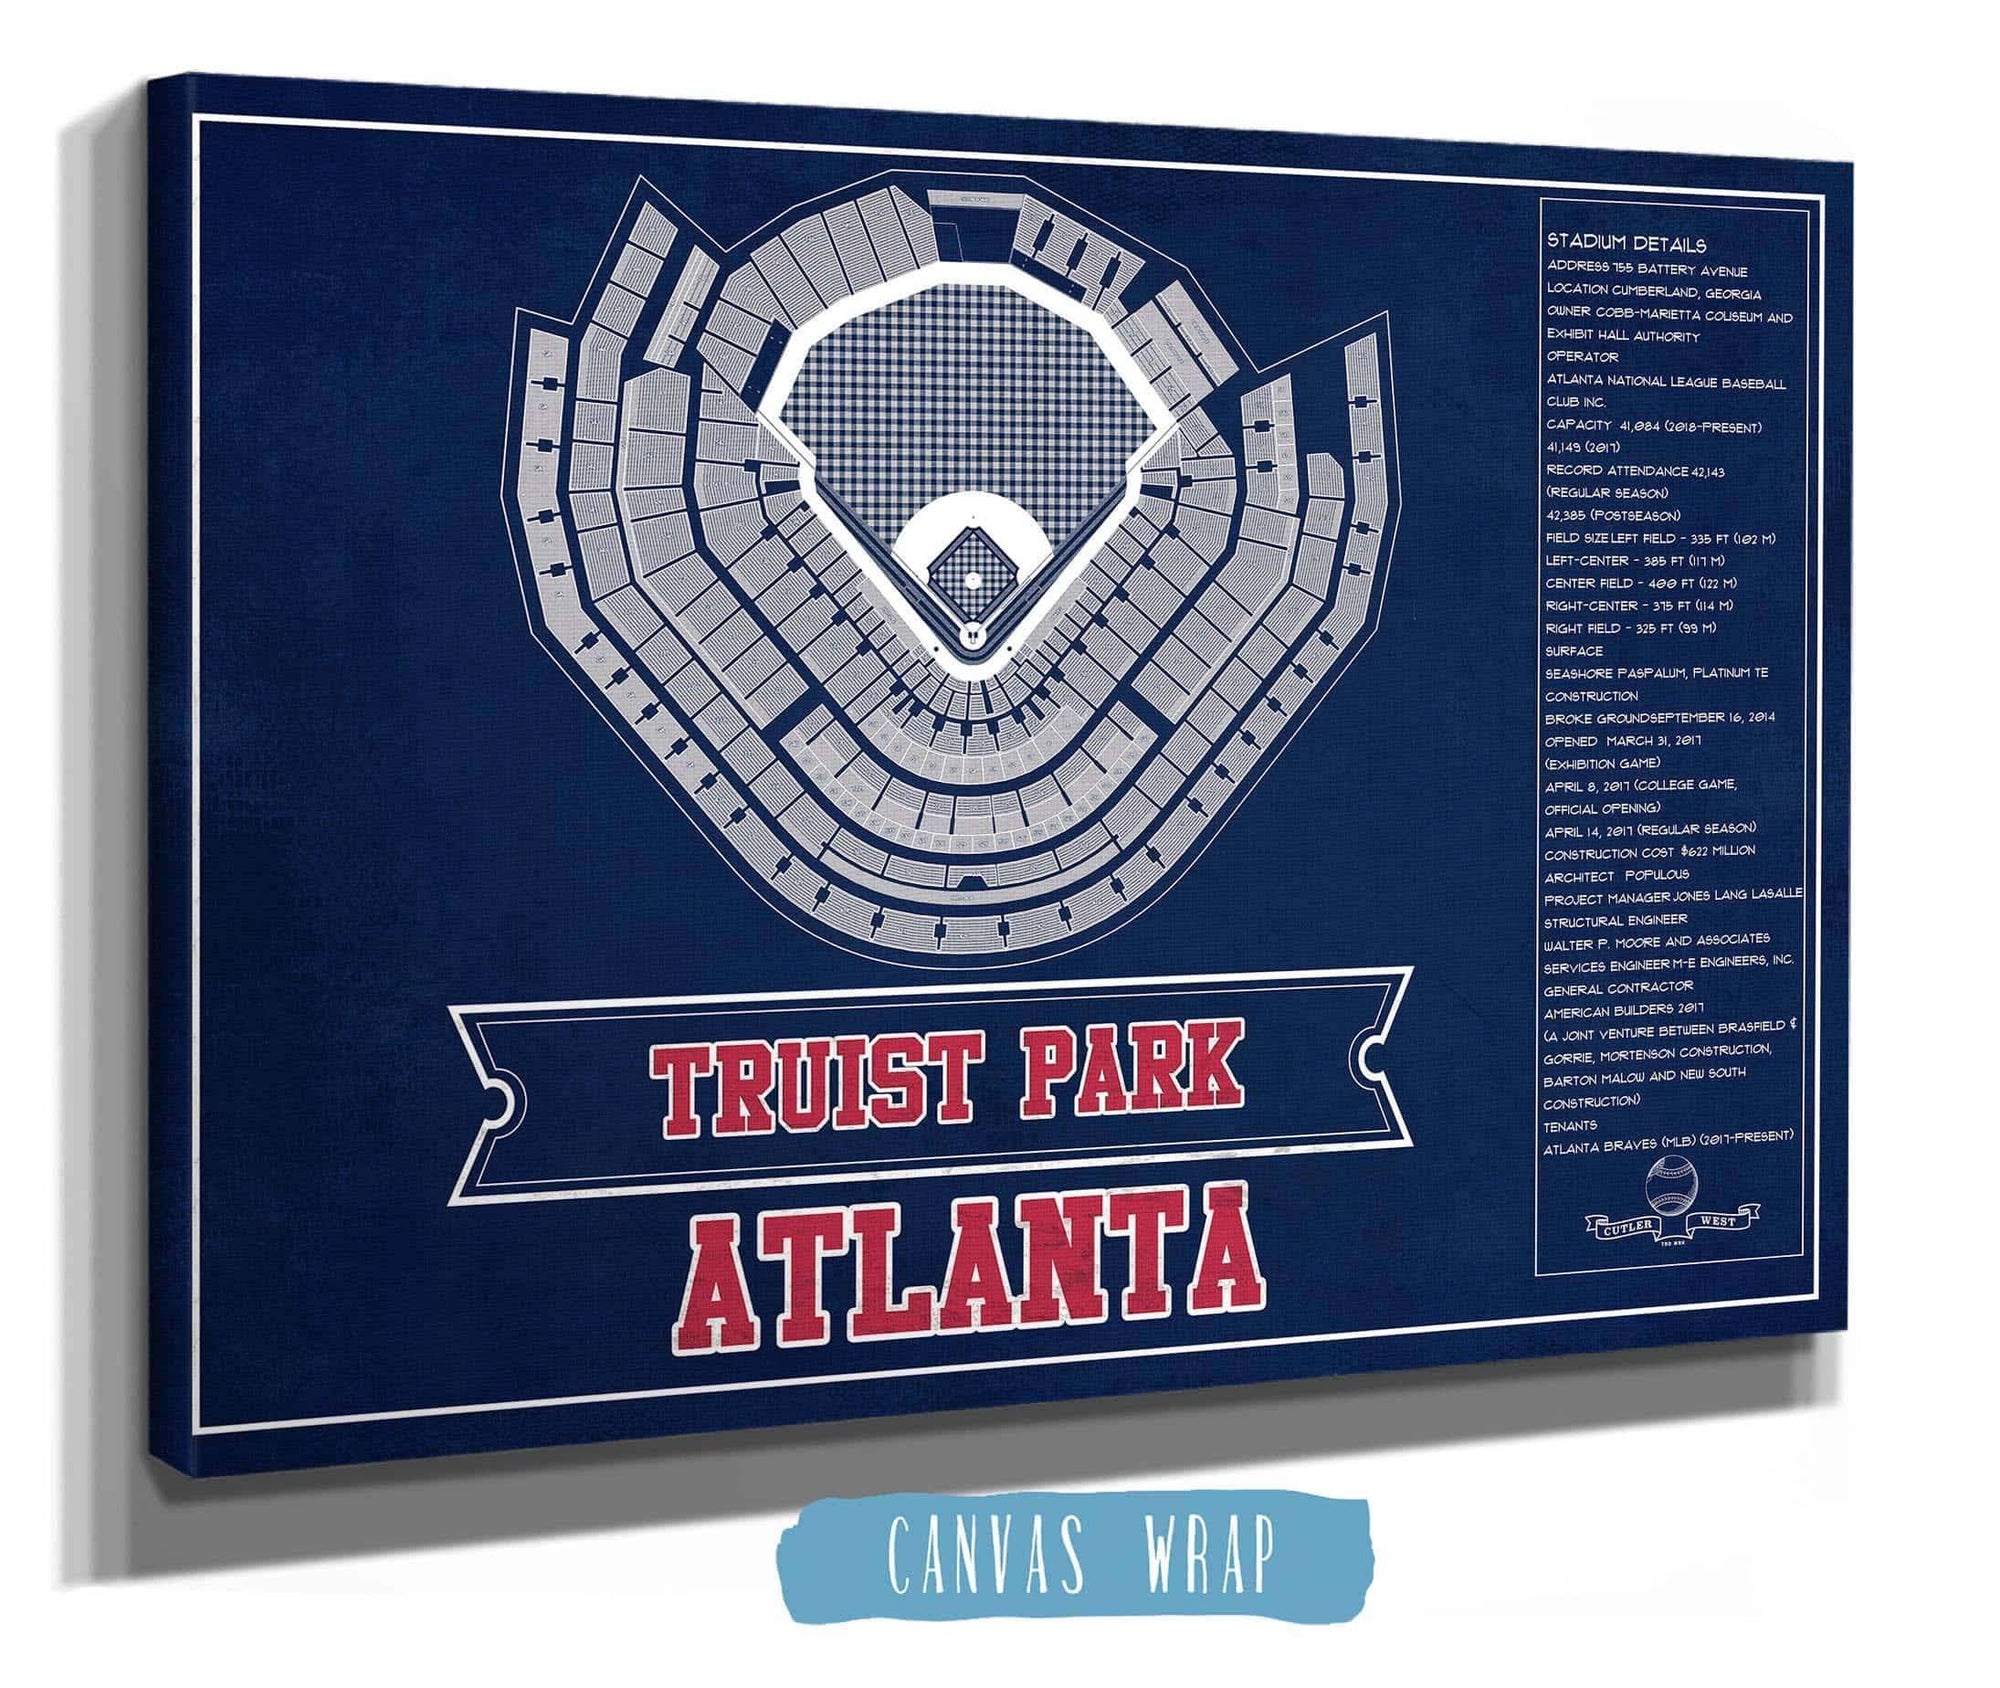 Cutler West Baseball Collection Turner Field - Atlanta Braves (MLB) Team Color Vintage Baseball Print